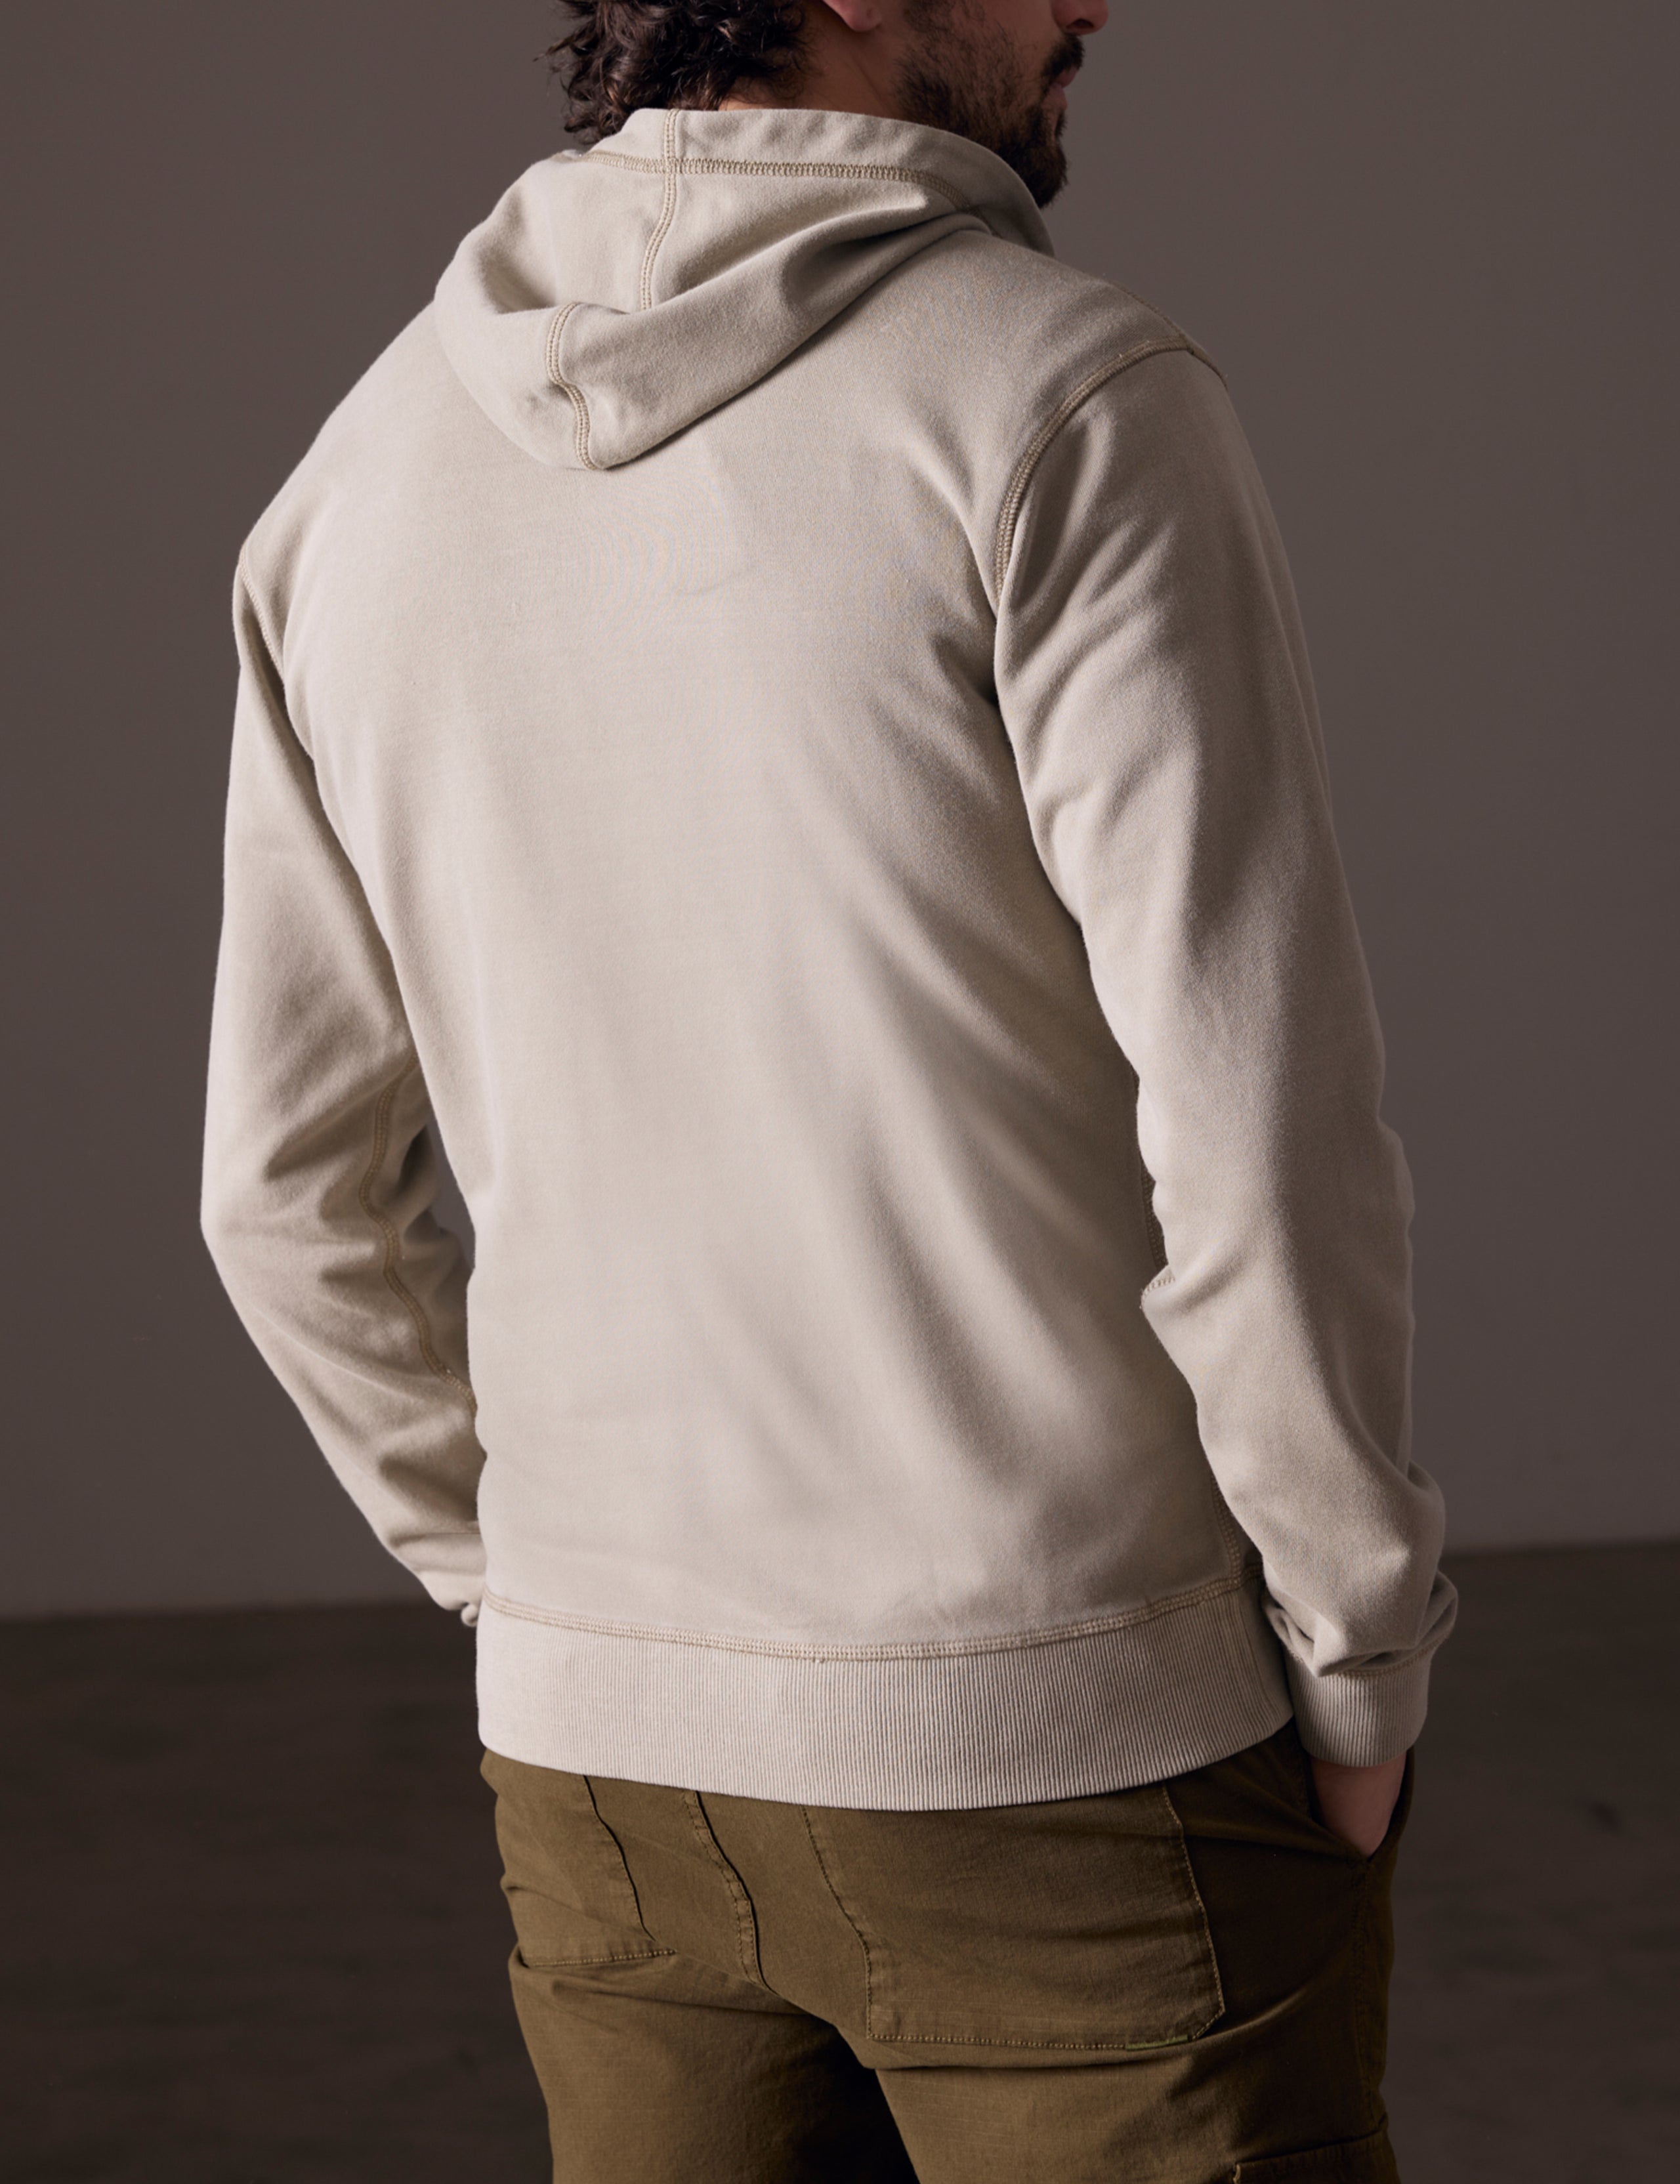 Back view of man wearing full-zip hoodie